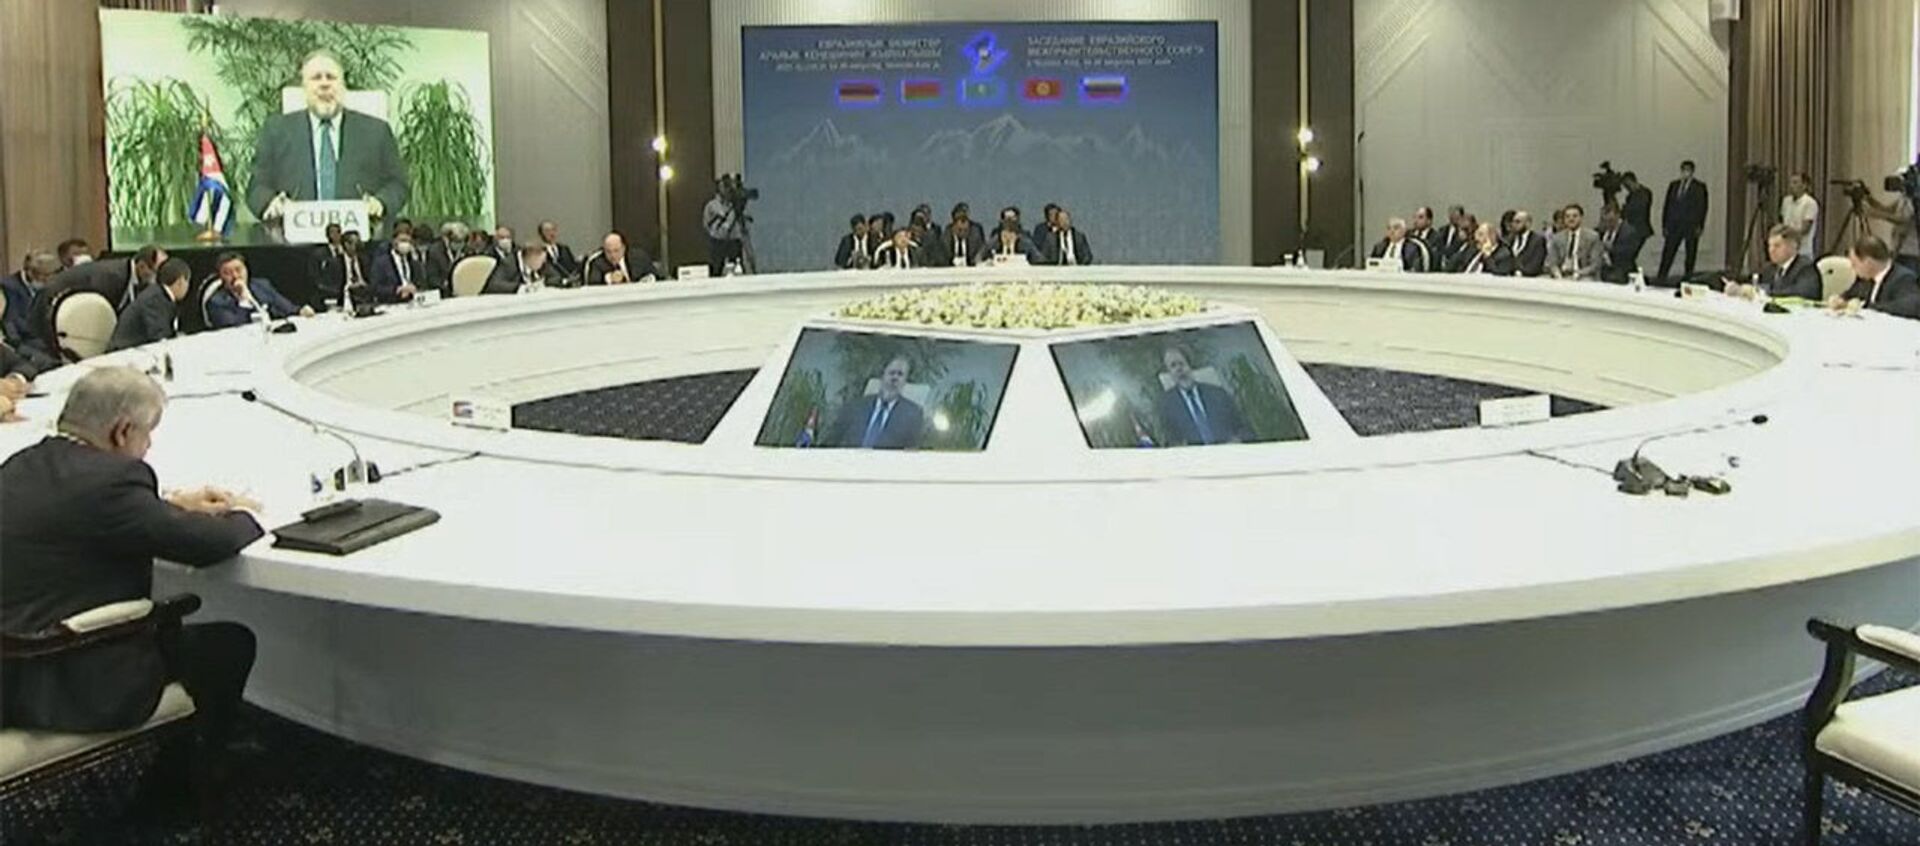 В Чолпон-Ате проходит встреча глав правительств стран ЕАЭС — прямой эфир - Sputnik Кыргызстан, 1920, 20.08.2021